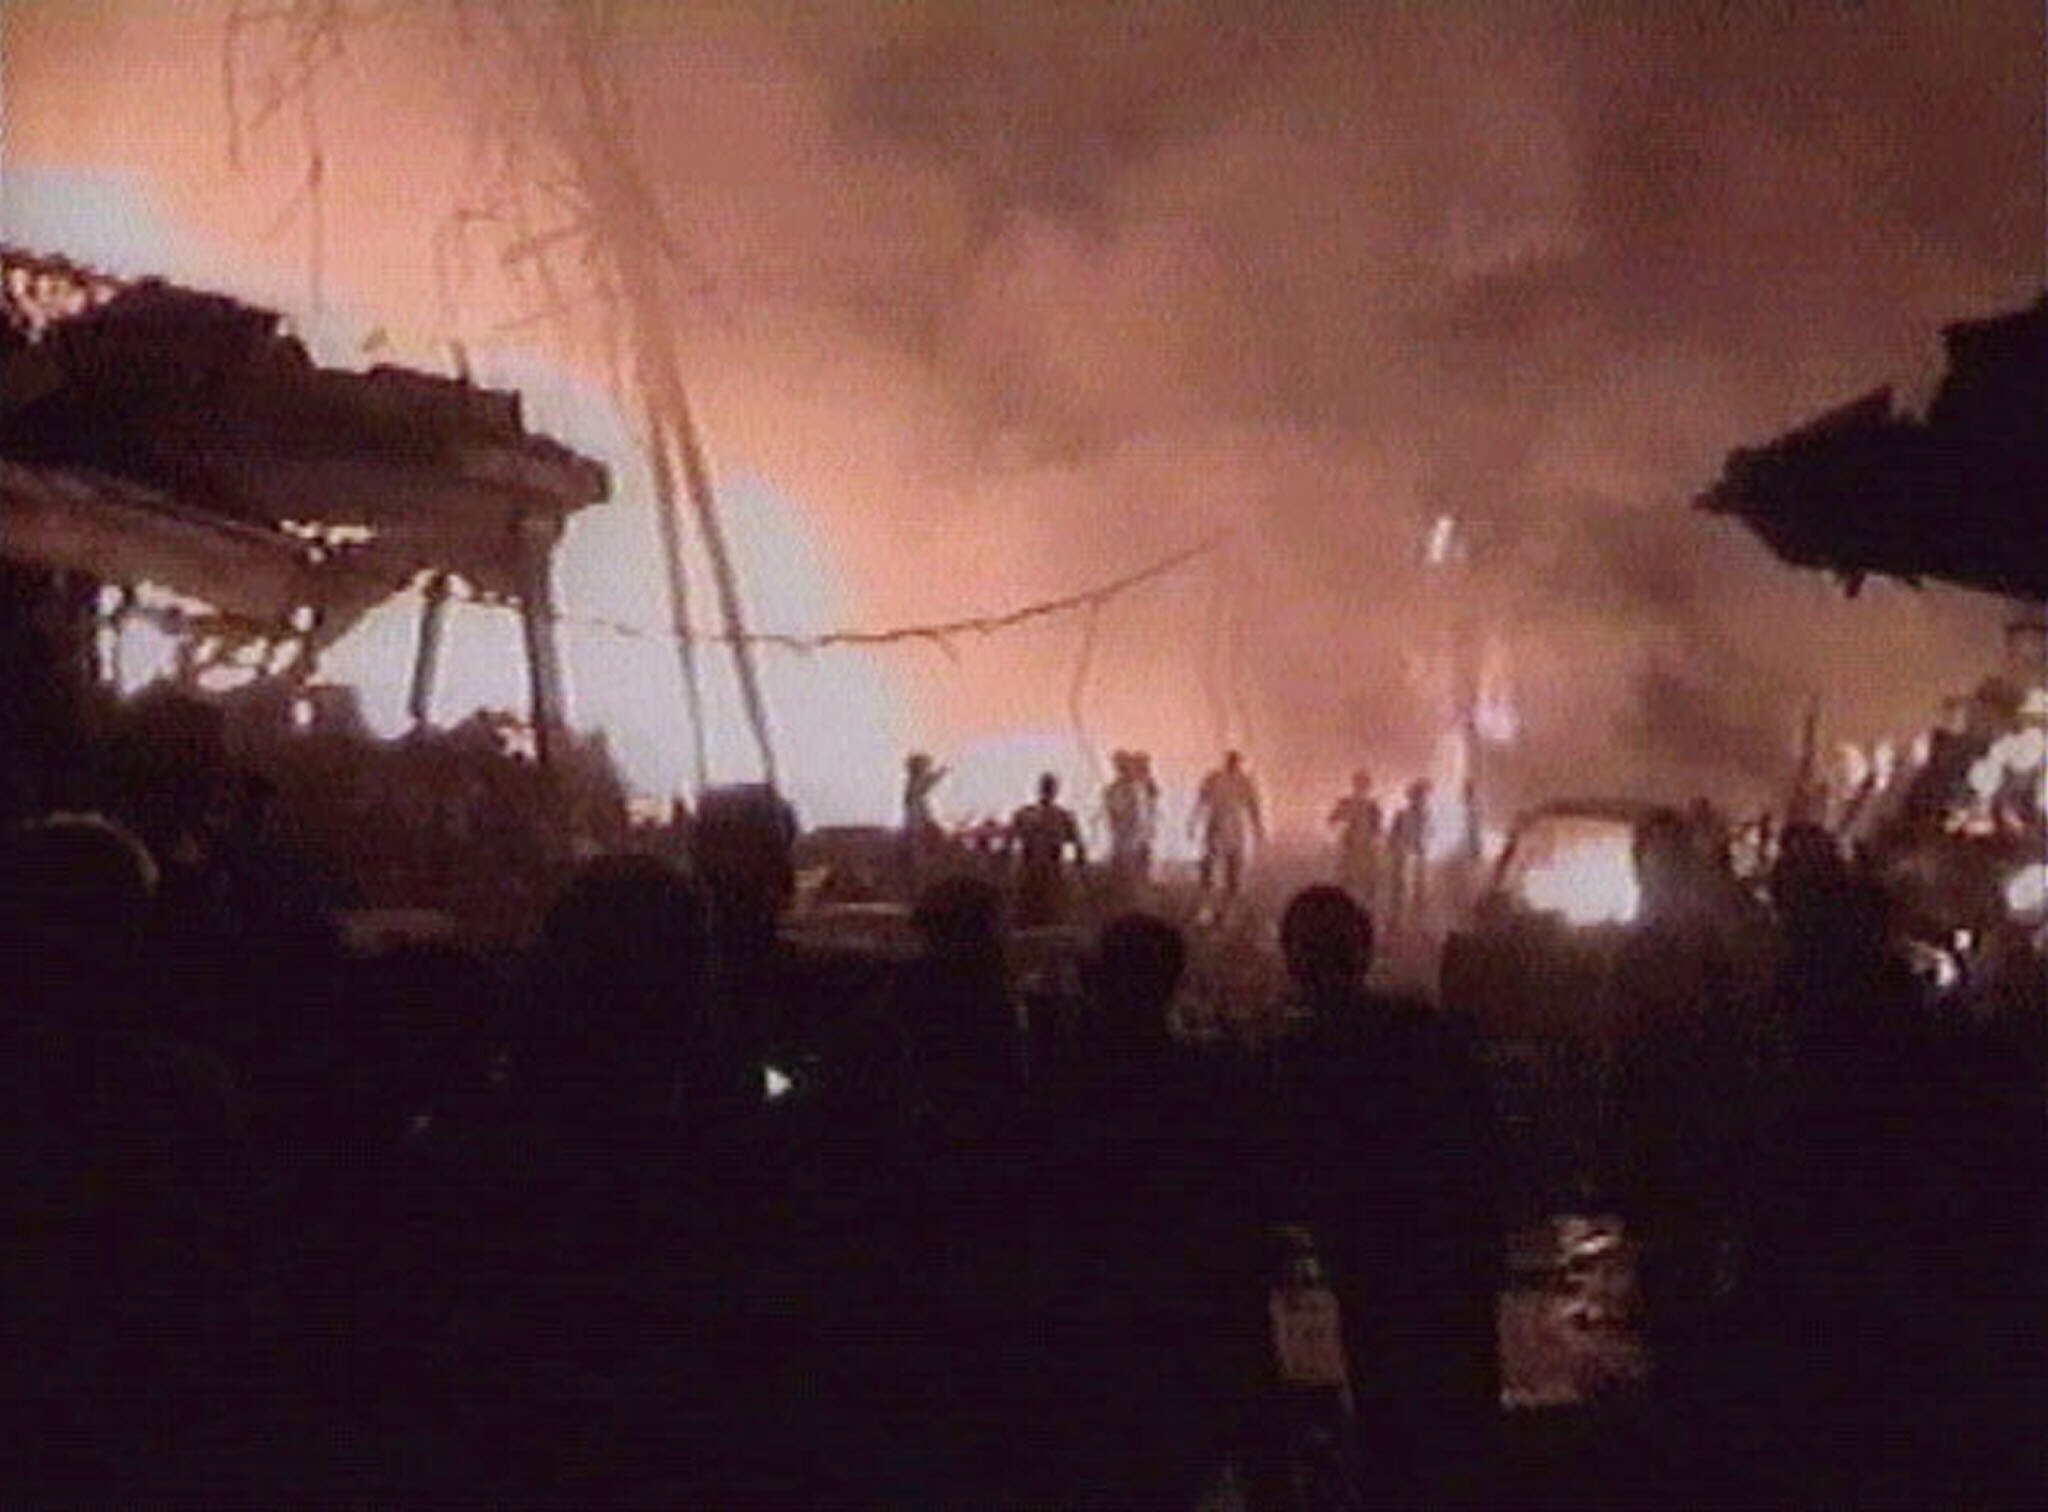 People当他们看到炸弹爆炸后建筑物和汽车残骸中燃烧的火焰时，可以看到剪影。” class=